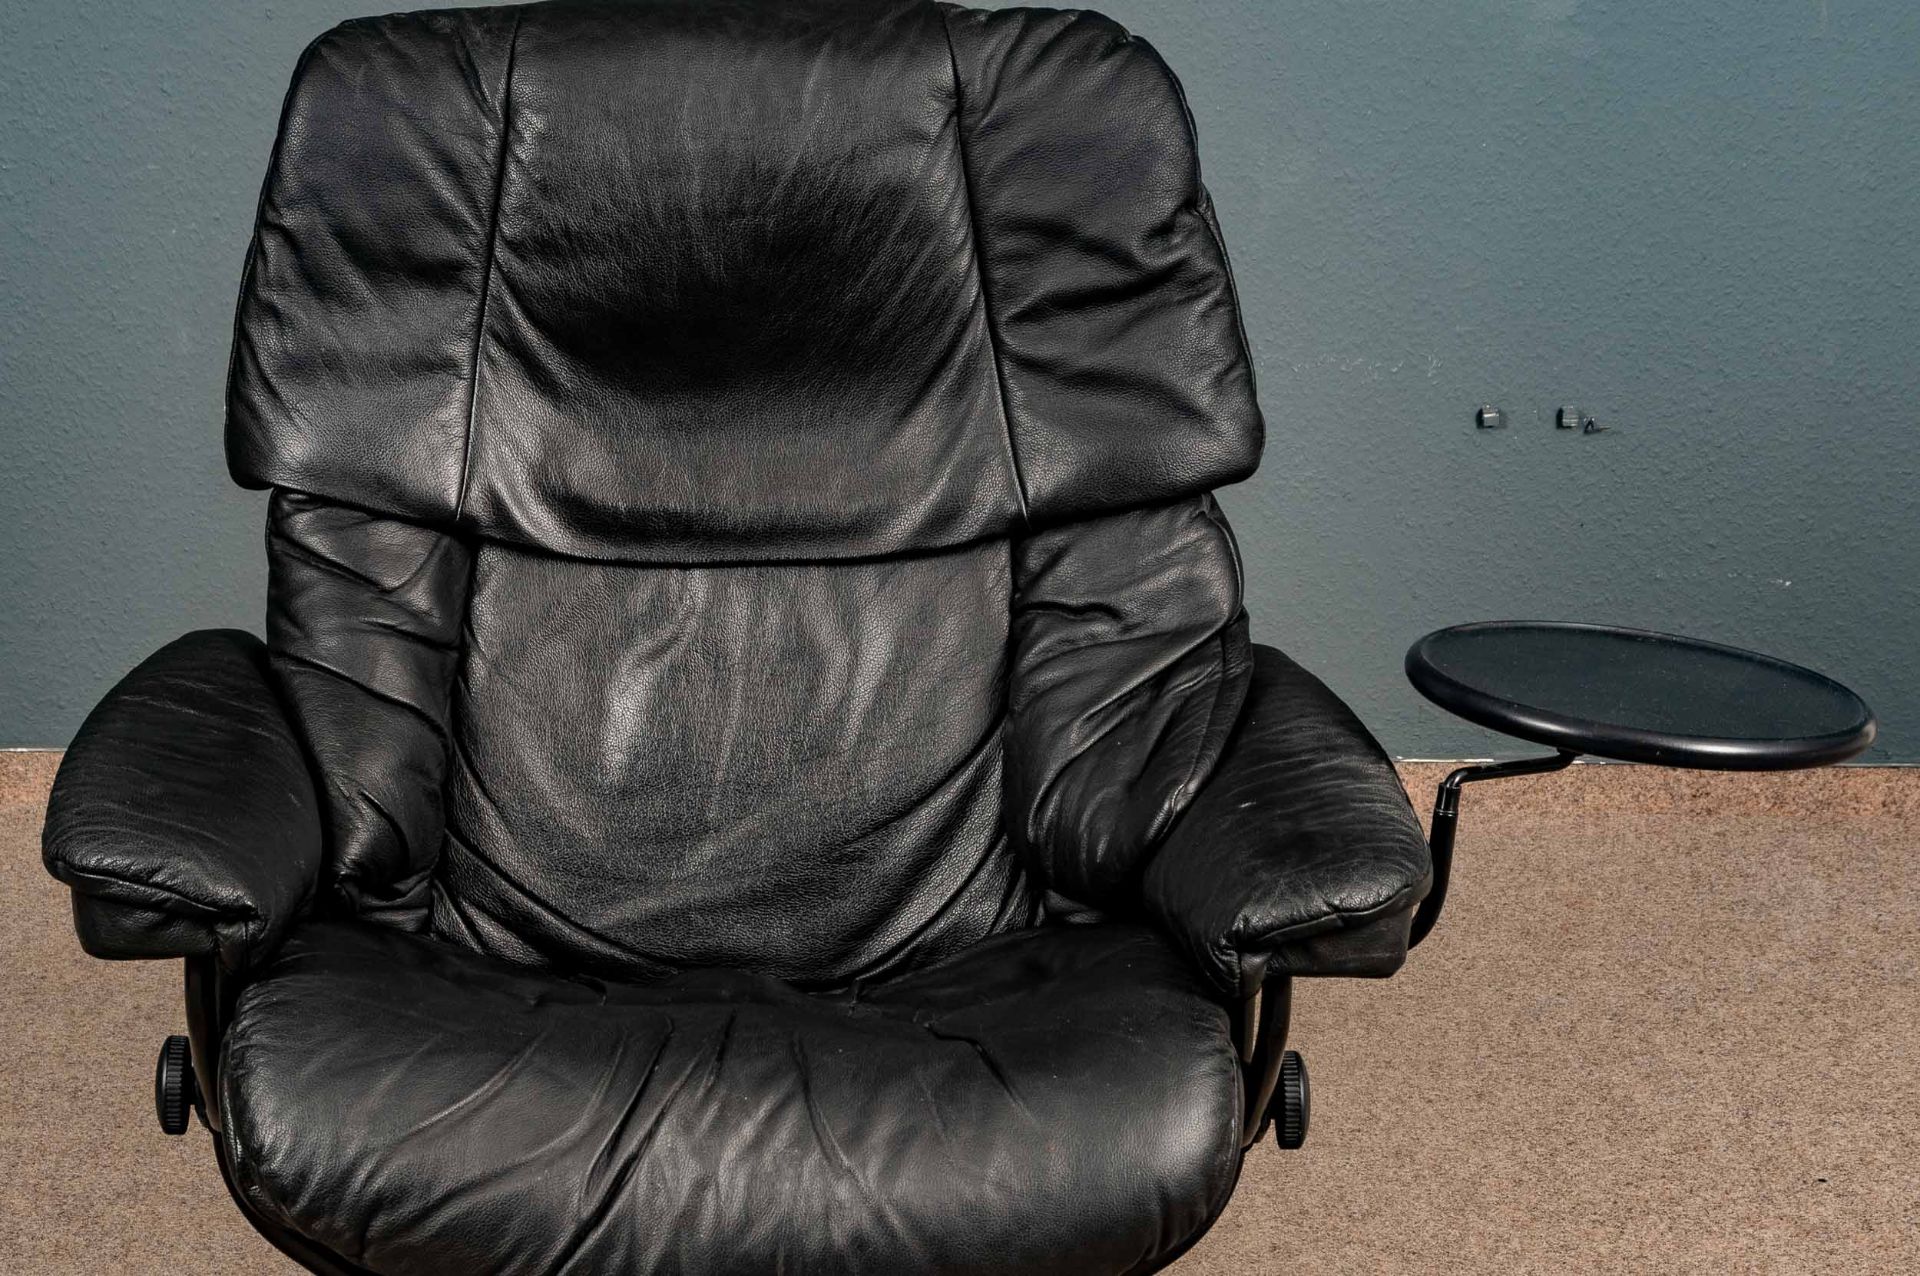 Großer "STRESSLESS" - Sessel mit passendem Hocker, an Armlehne mit beweglicher Ablage. Schöner, geb - Bild 3 aus 10